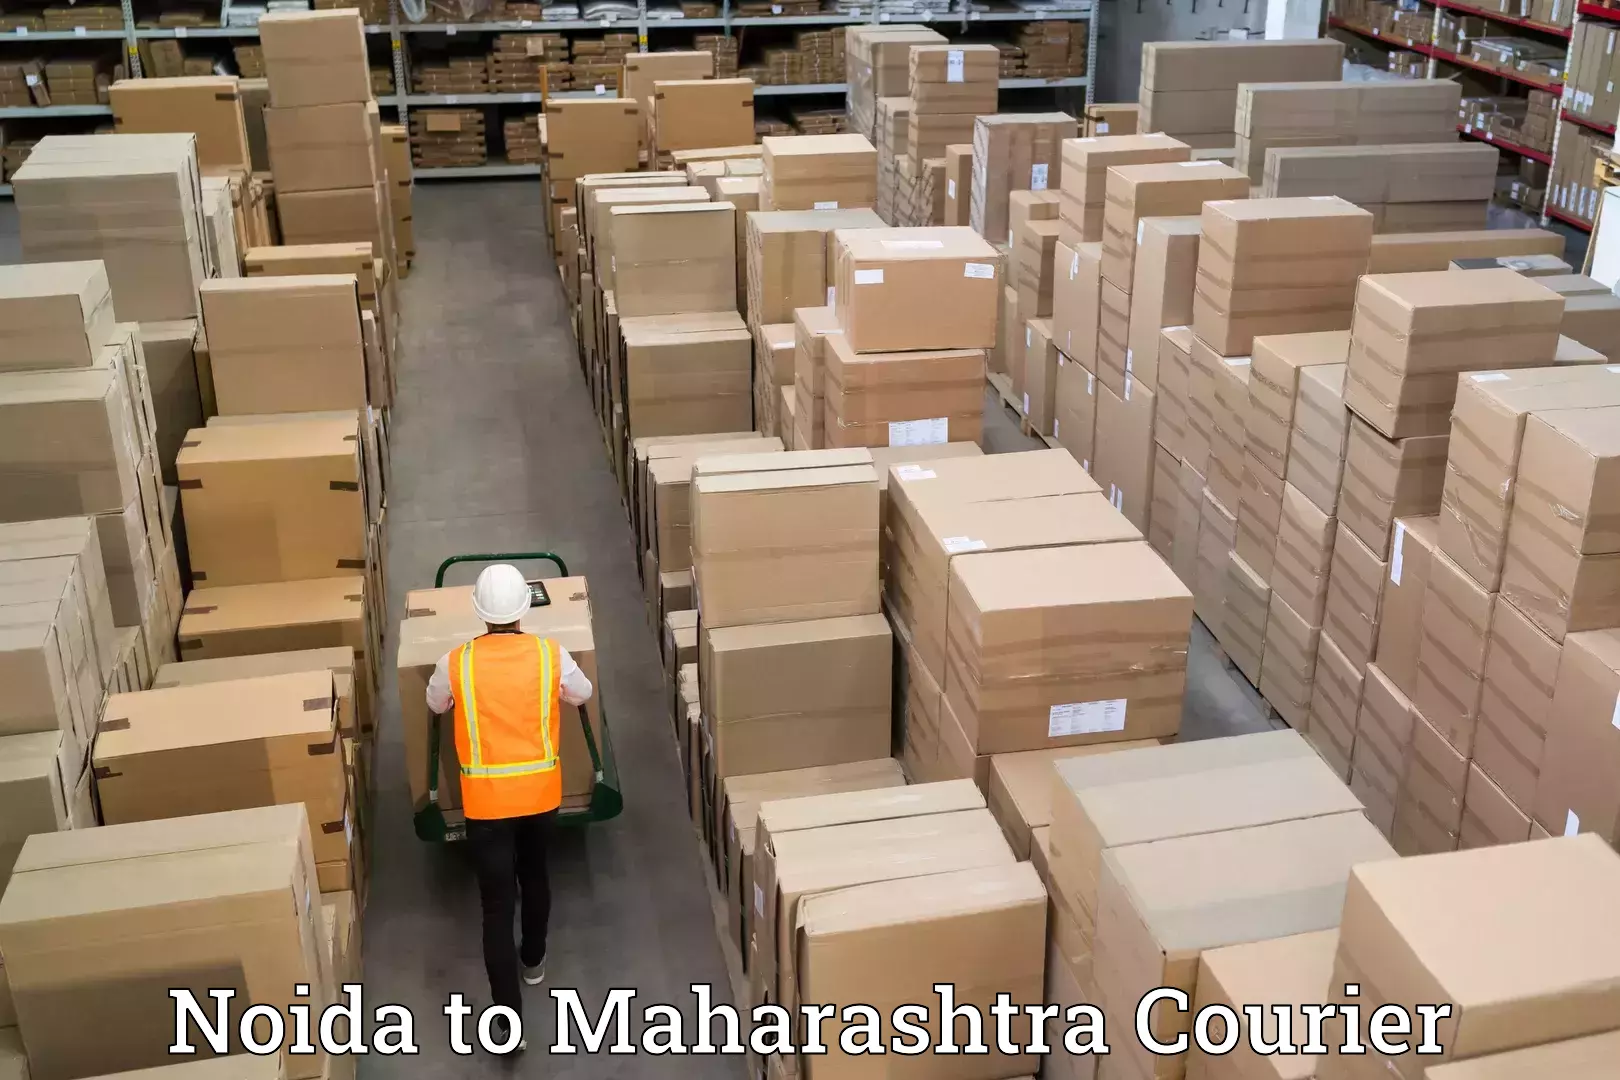 Professional moving company Noida to Maharashtra